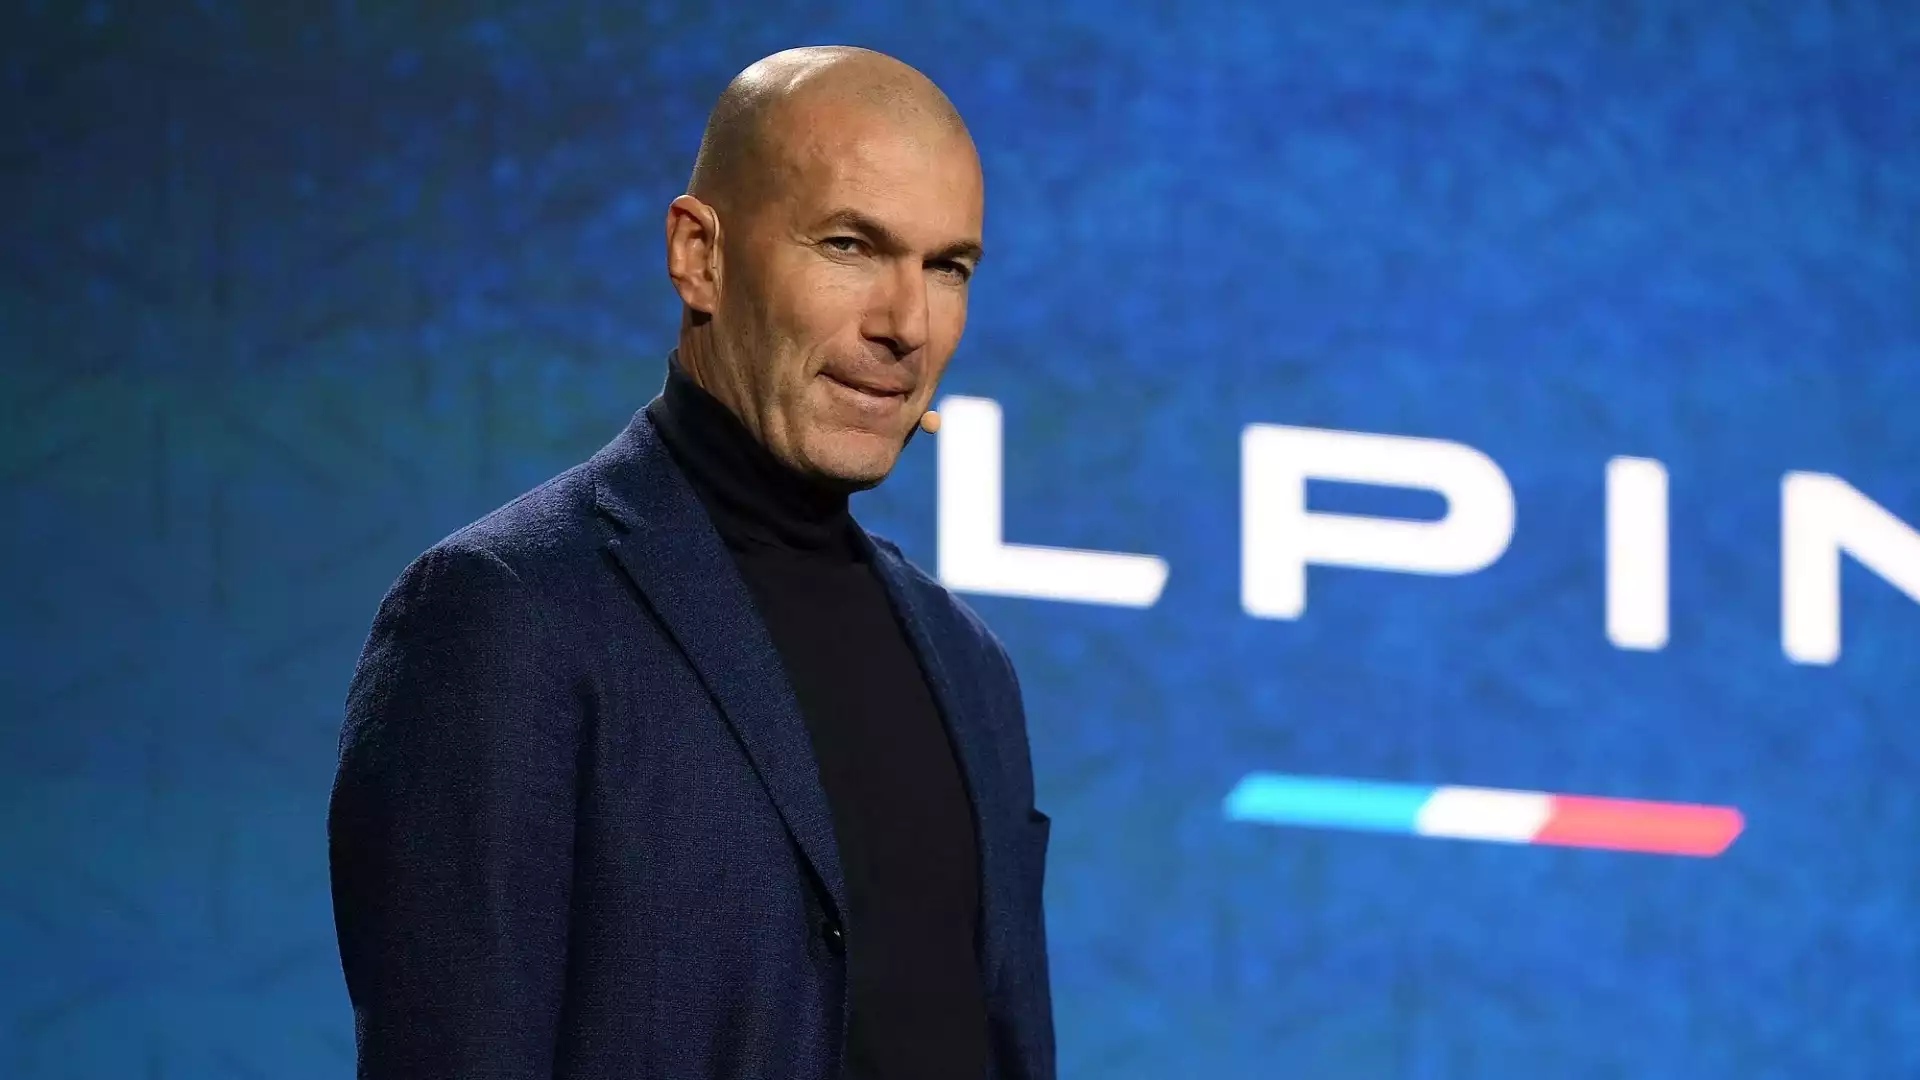 Anche Zidane è senza contratto: entrambi hanno però un ingaggio fuori portata per i bianconeri